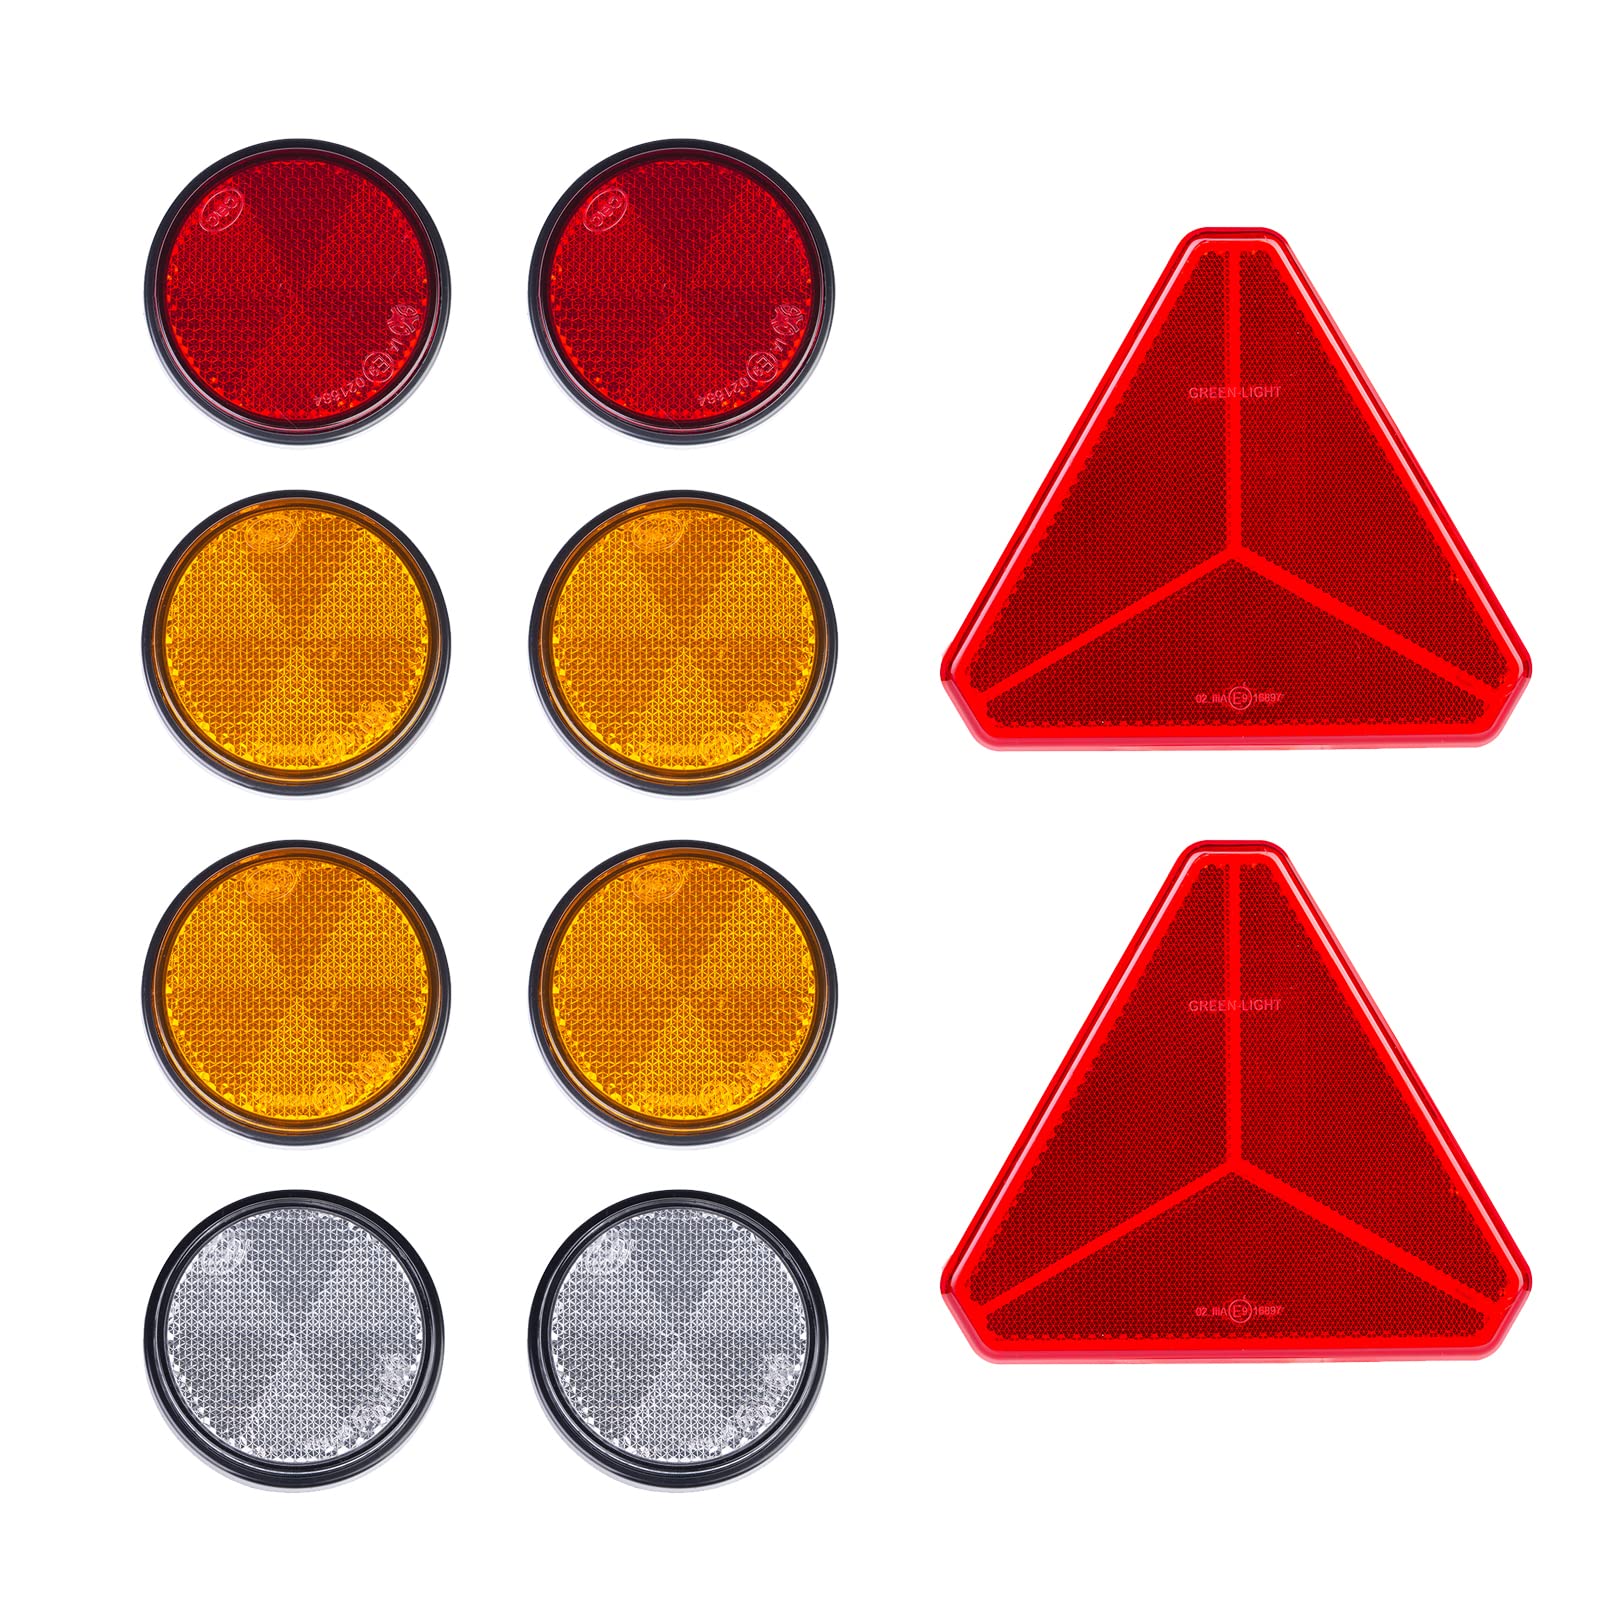 BEIJISTAR 2 x Rot Dreieck Selbstklebend Reflektor, 2 x Rot 4 x Gelb 2 x Weiß Rund Selbstklebend Reflektor, Anhänger Katzenauge Reflektor, für Torpfosten Zäune LKW RV Wohnwagen von BEIJISTAR